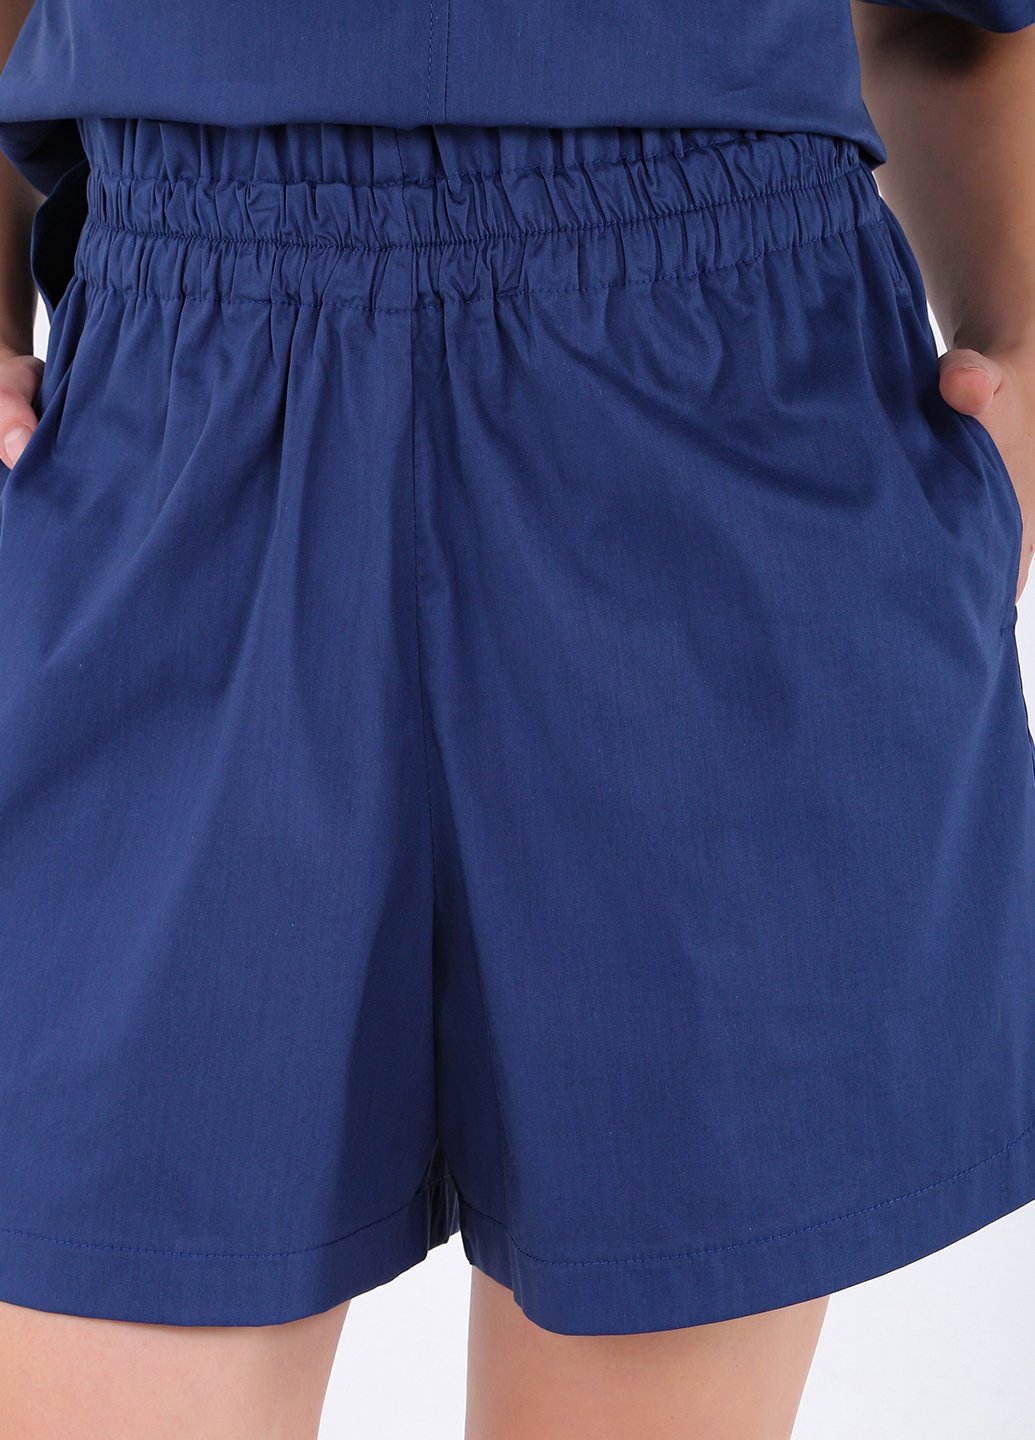 Купити Бавовняні шорти жіночі бермуди синього кольору Merlini Перуджа 300000052, розмір 42-44 в інтернет-магазині